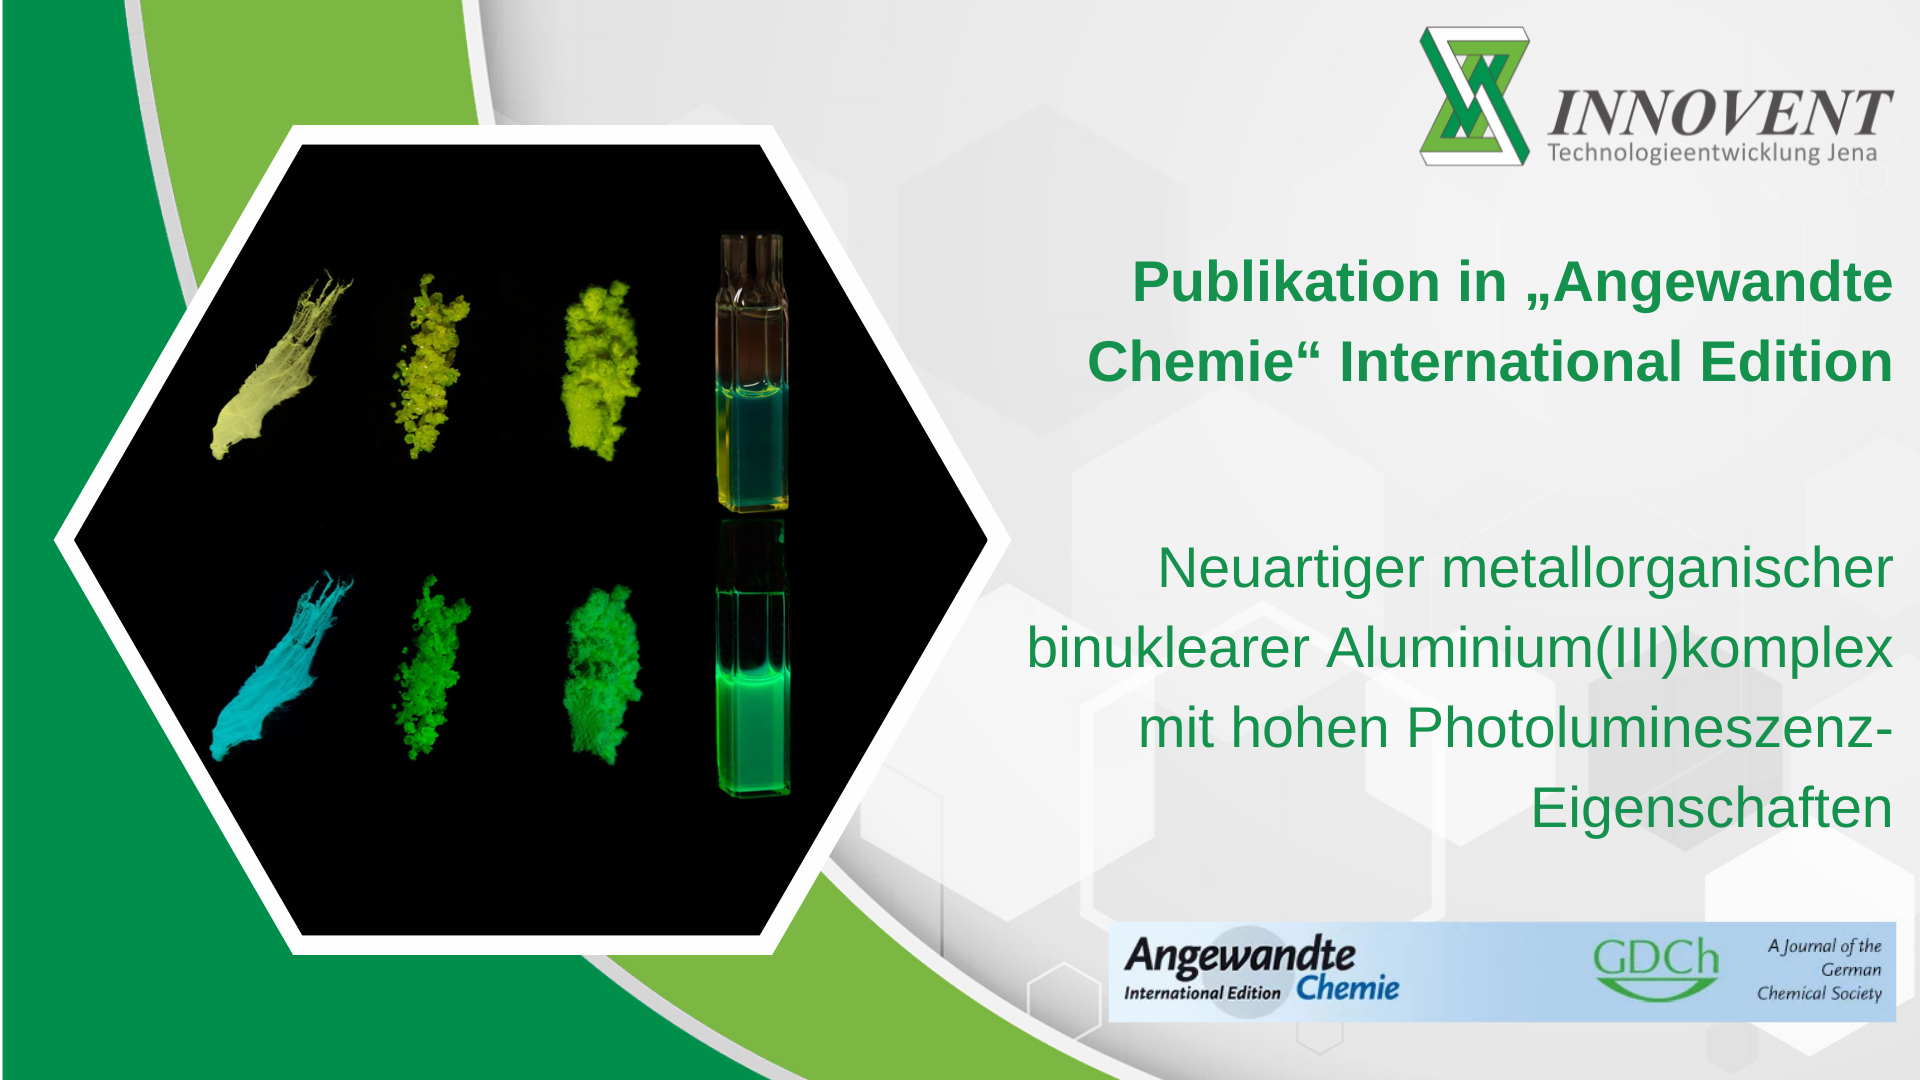 Neuartiger metallorganischer binuklearer Aluminium(III)komplex mit hohen Photolumineszenzeigenschaften 